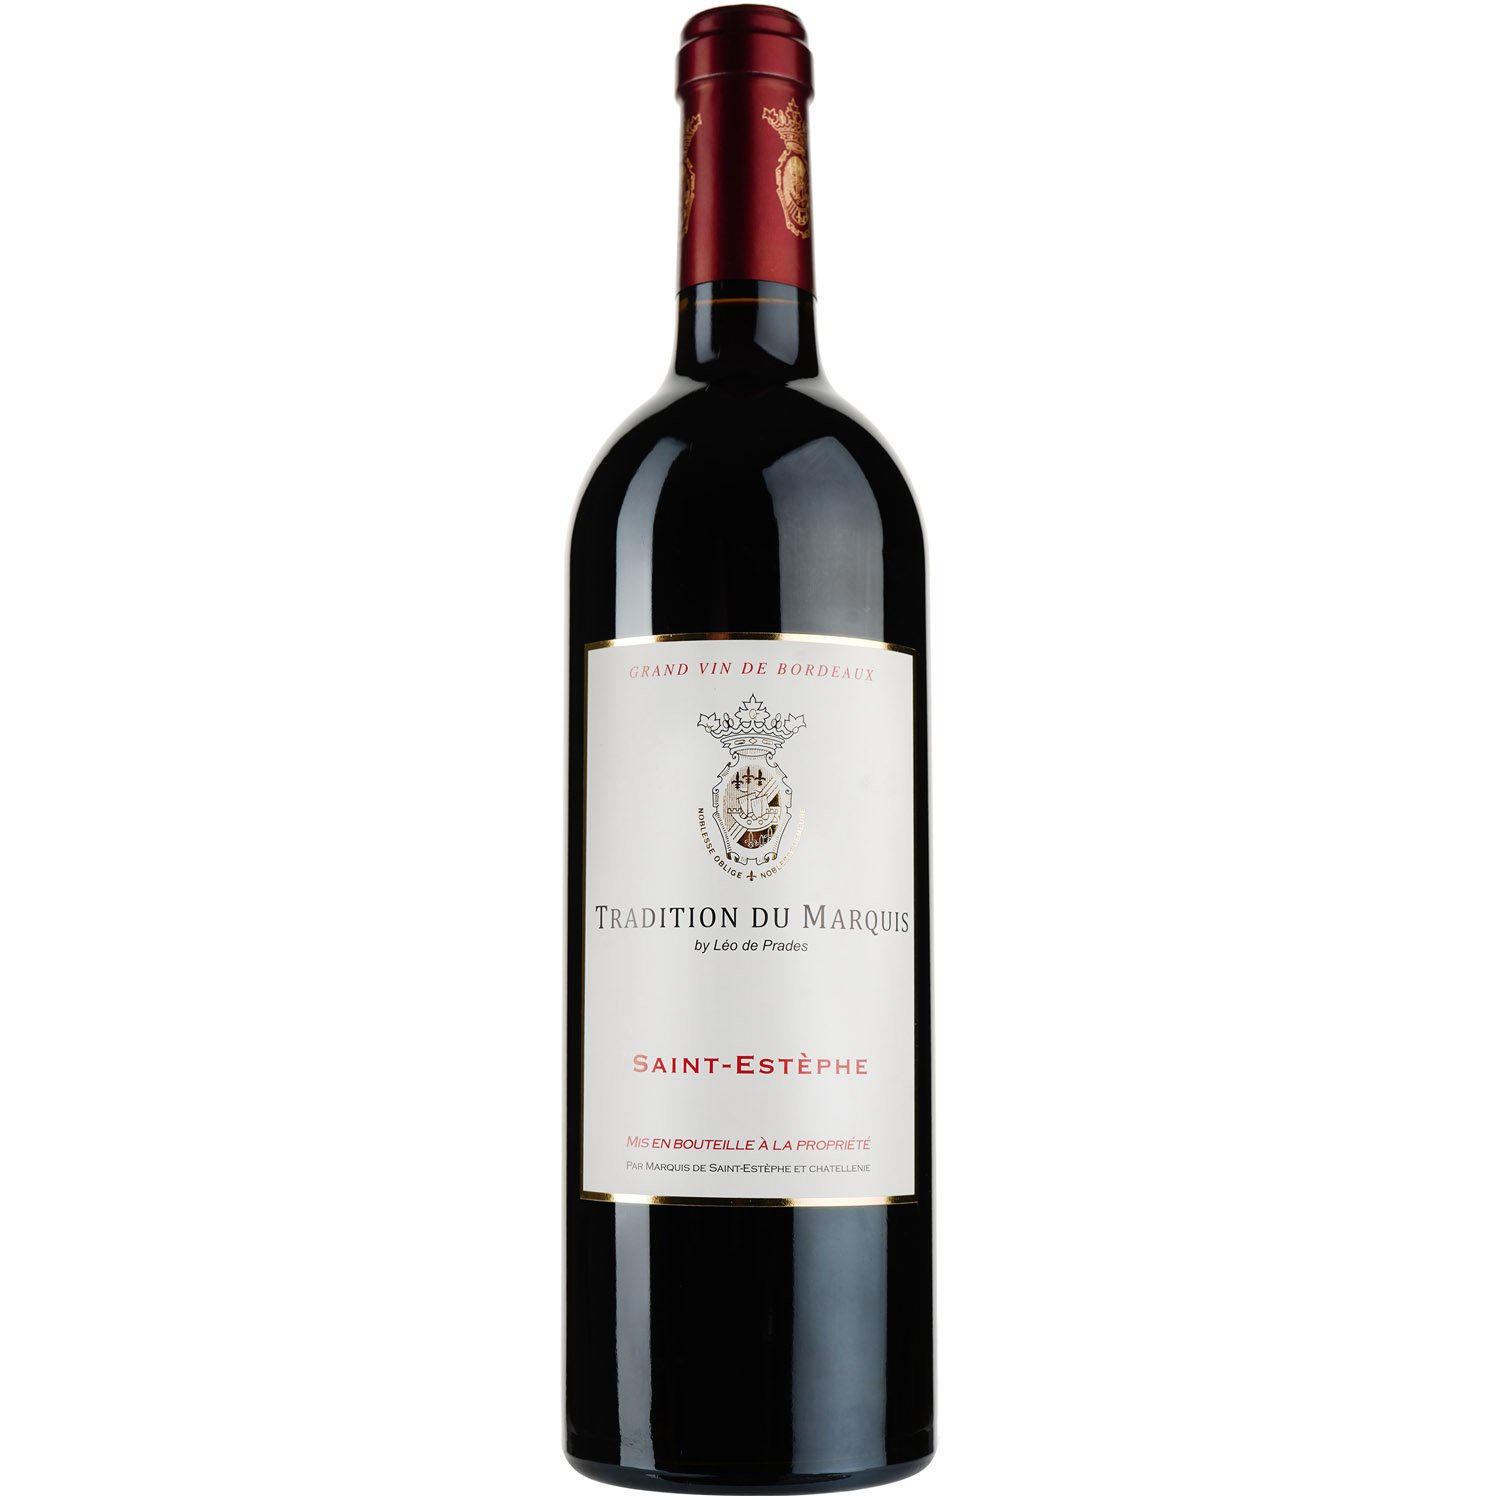 Вино Tradition du Marquis by Leo de Prades AOP Saint-Estephe 2014, красное, сухое, 0,75 л - фото 1